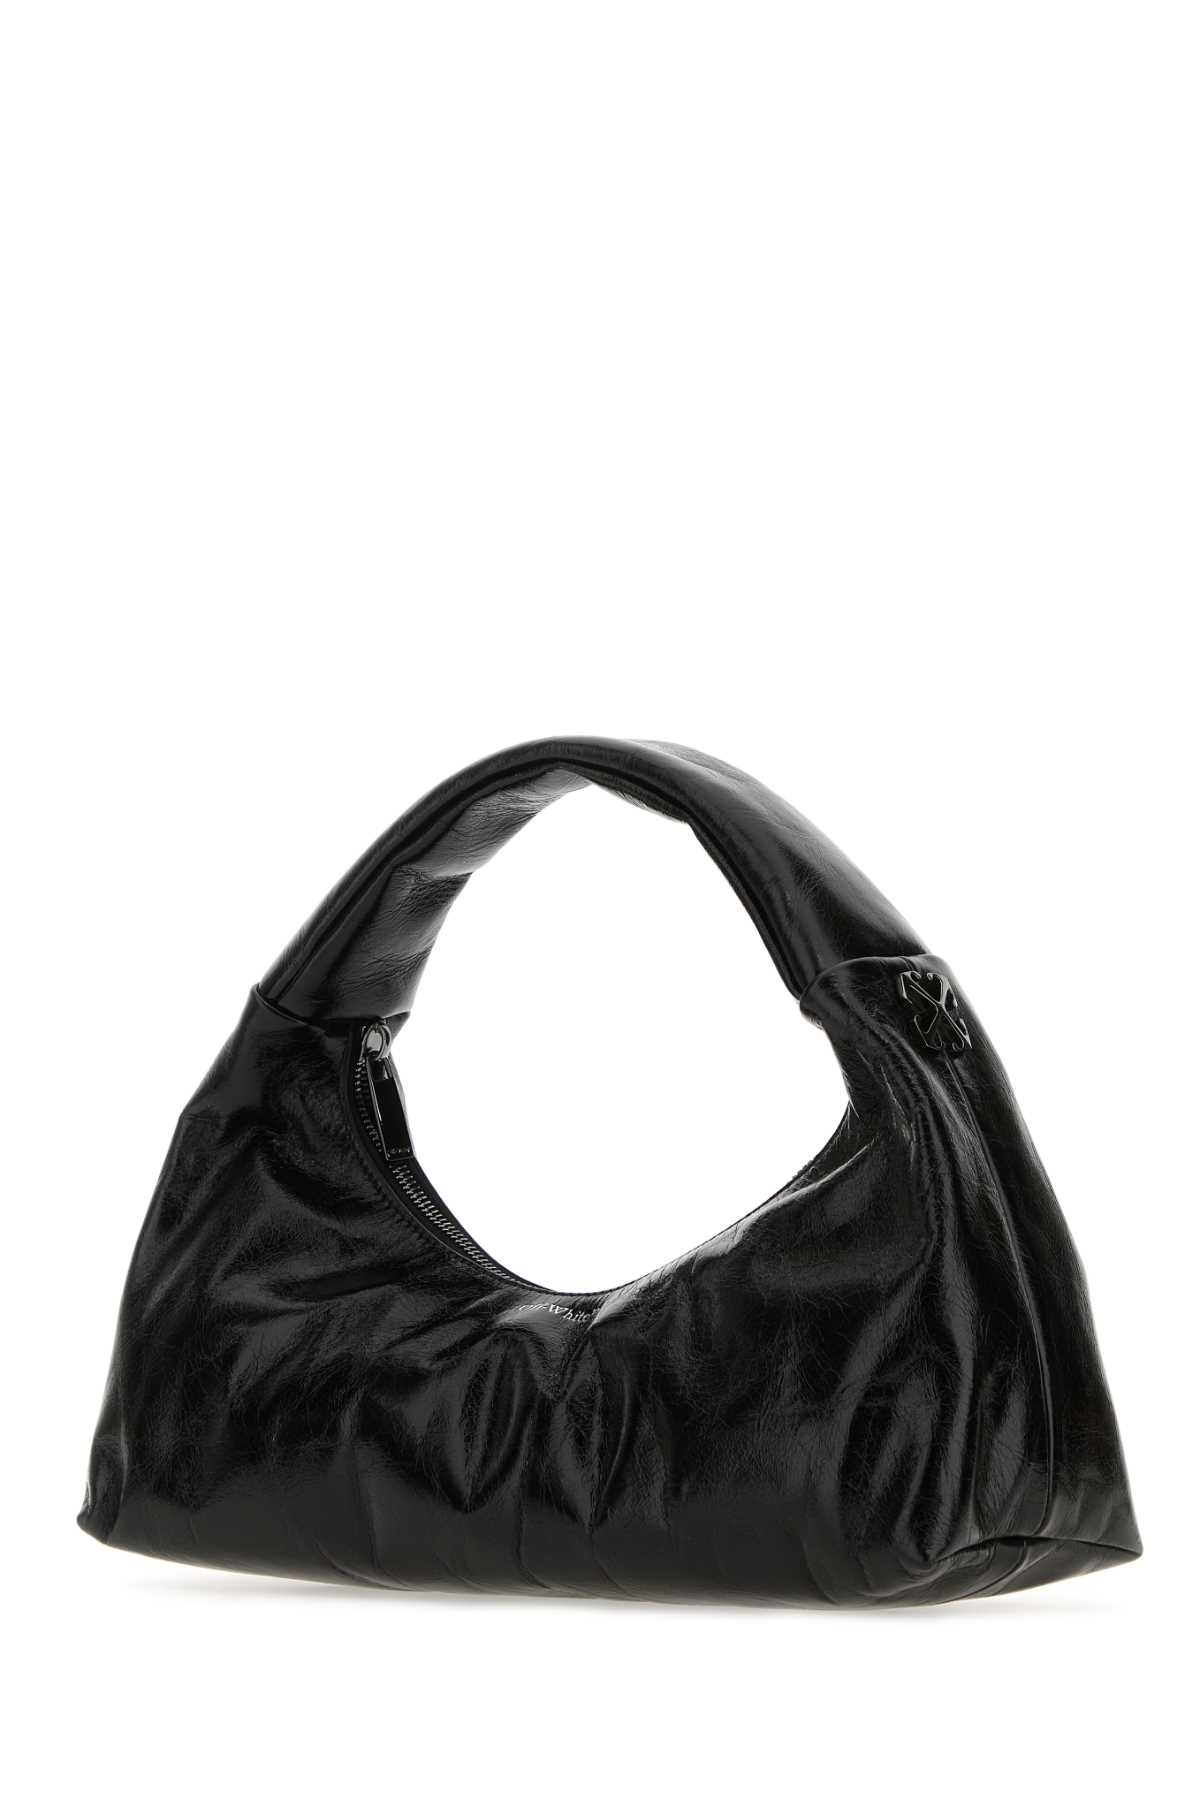 Off-white Black Leather Arcade Shoulder Bag